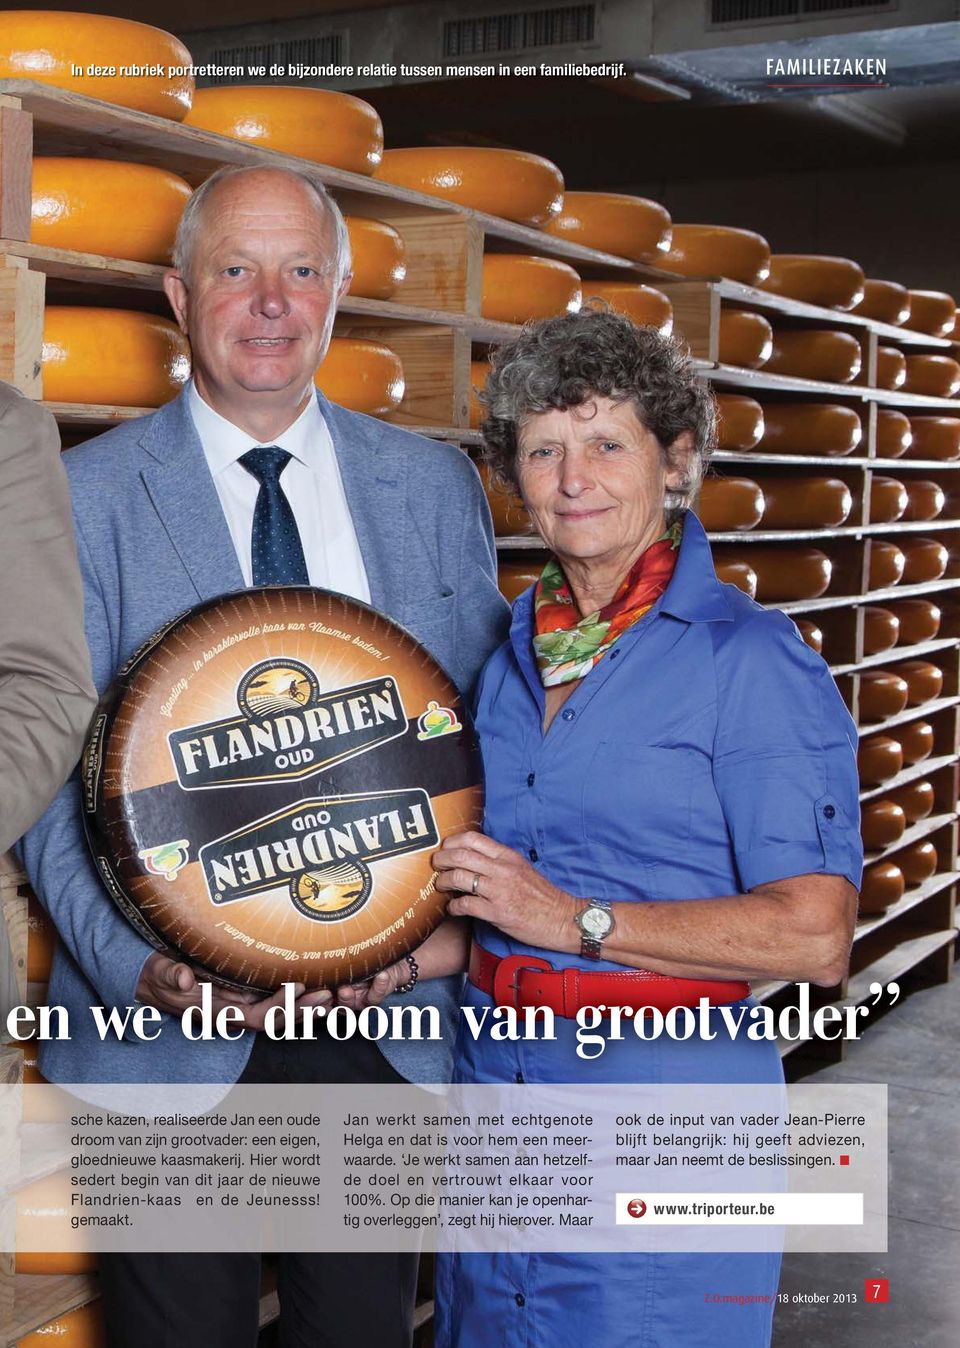 Hier wordt sedert begin van dit jaar de nieuwe Flandrien-kaas en de Jeunesss! gemaakt. Jan werkt samen met echtgenote Helga en dat is voor hem een meerwaarde.